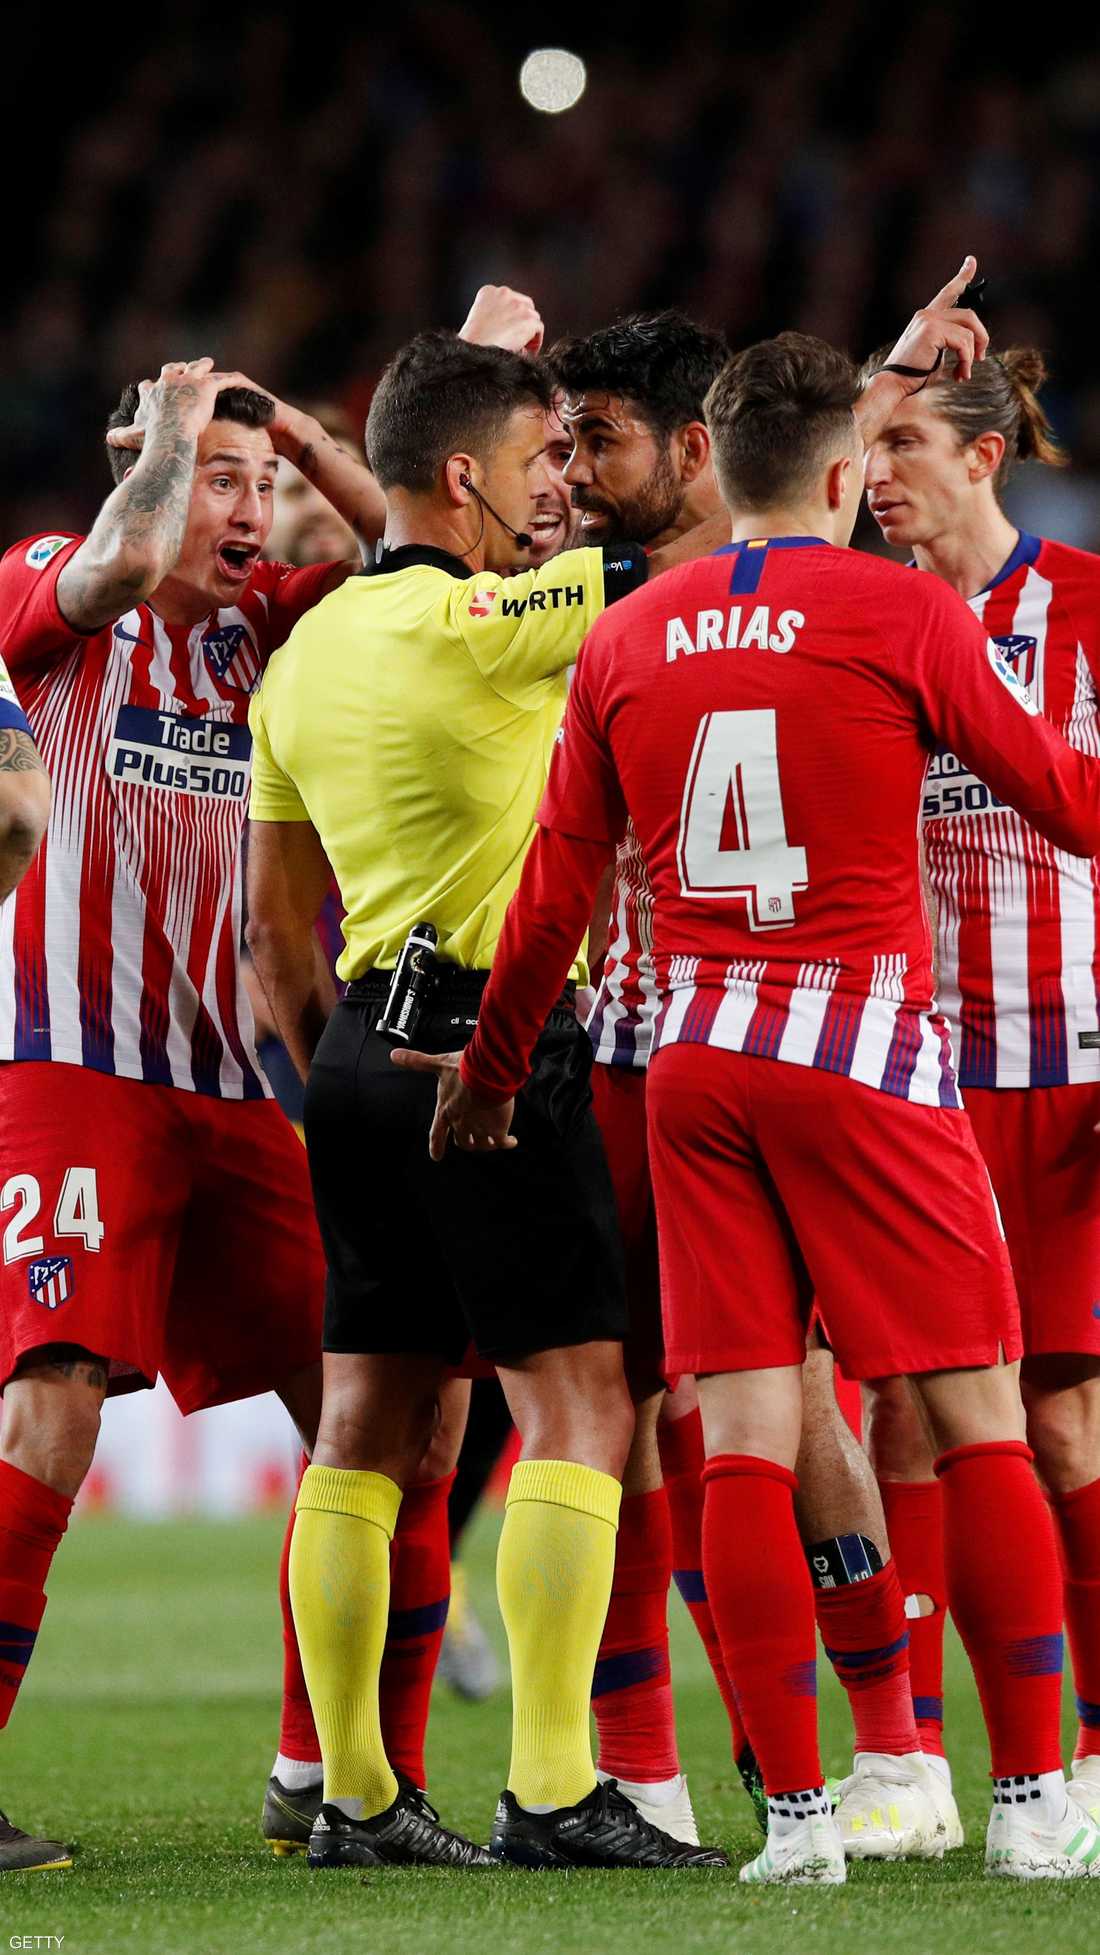 طرد المهاجم دييغو كوستا خلال مباراة فريقه أتلتيكو مدريد أمام برشلونة، مساء السبت، في الجولة الـ31 من الدوري الإسباني.